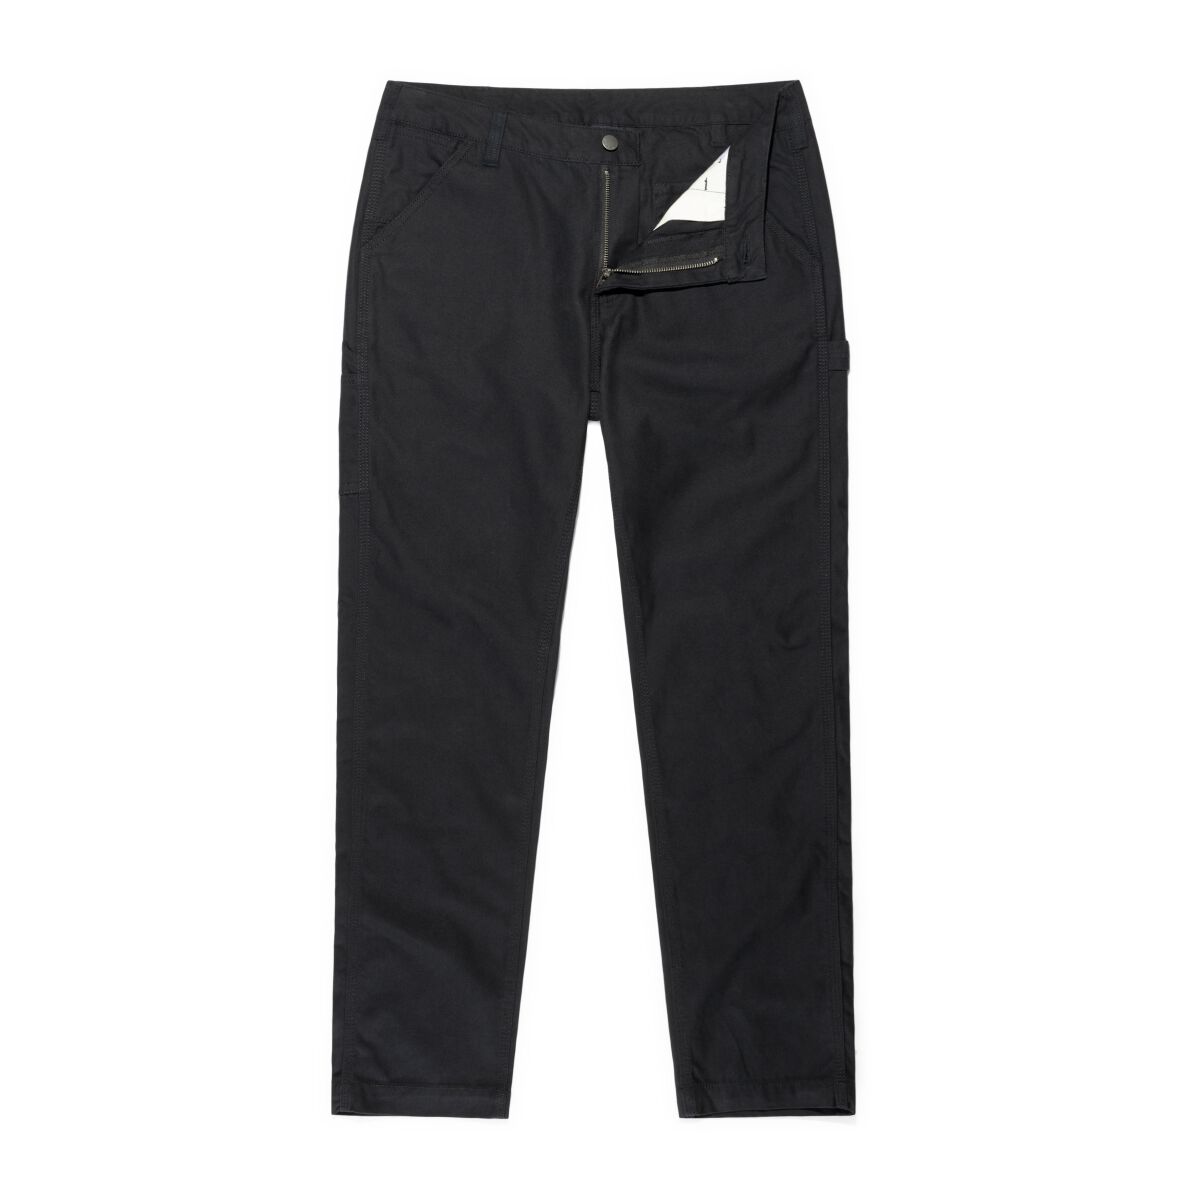 Vintage Industries Stoffhose - Cooper Pants - W32L32 bis W38L32 - für Männer - Größe W38L32 - schwarz